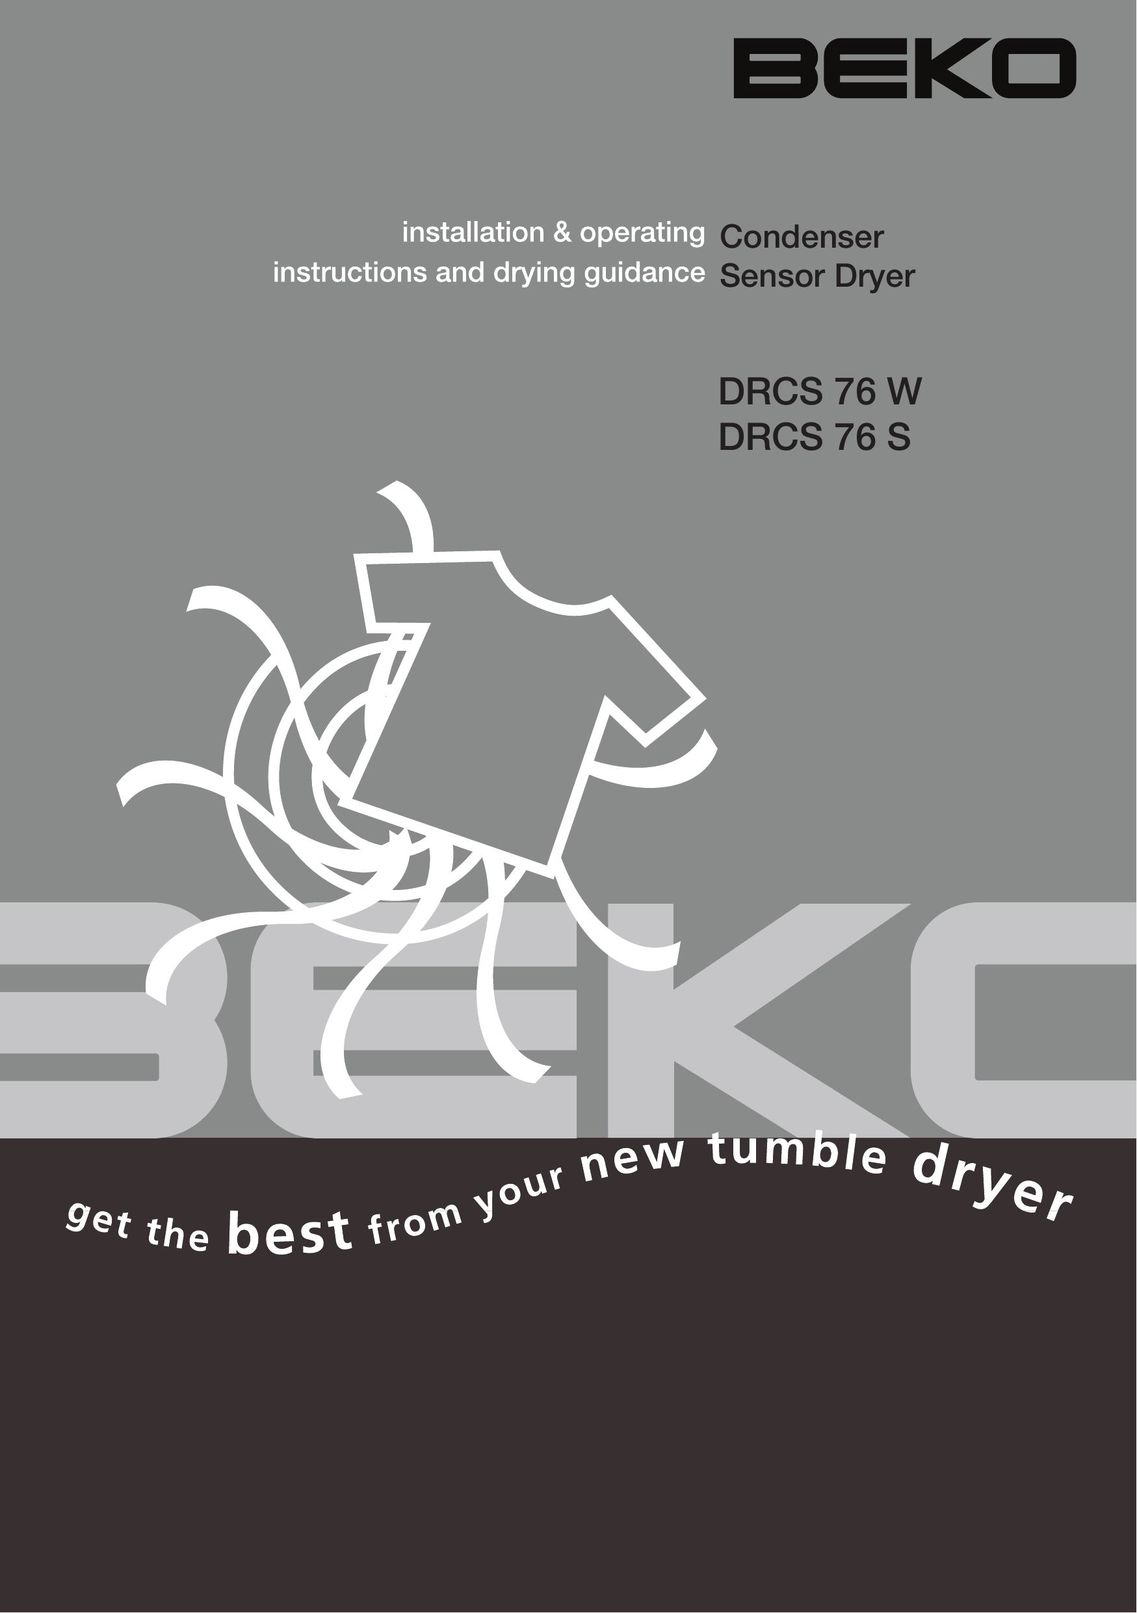 Beko DRCS 76 W Planer User Manual